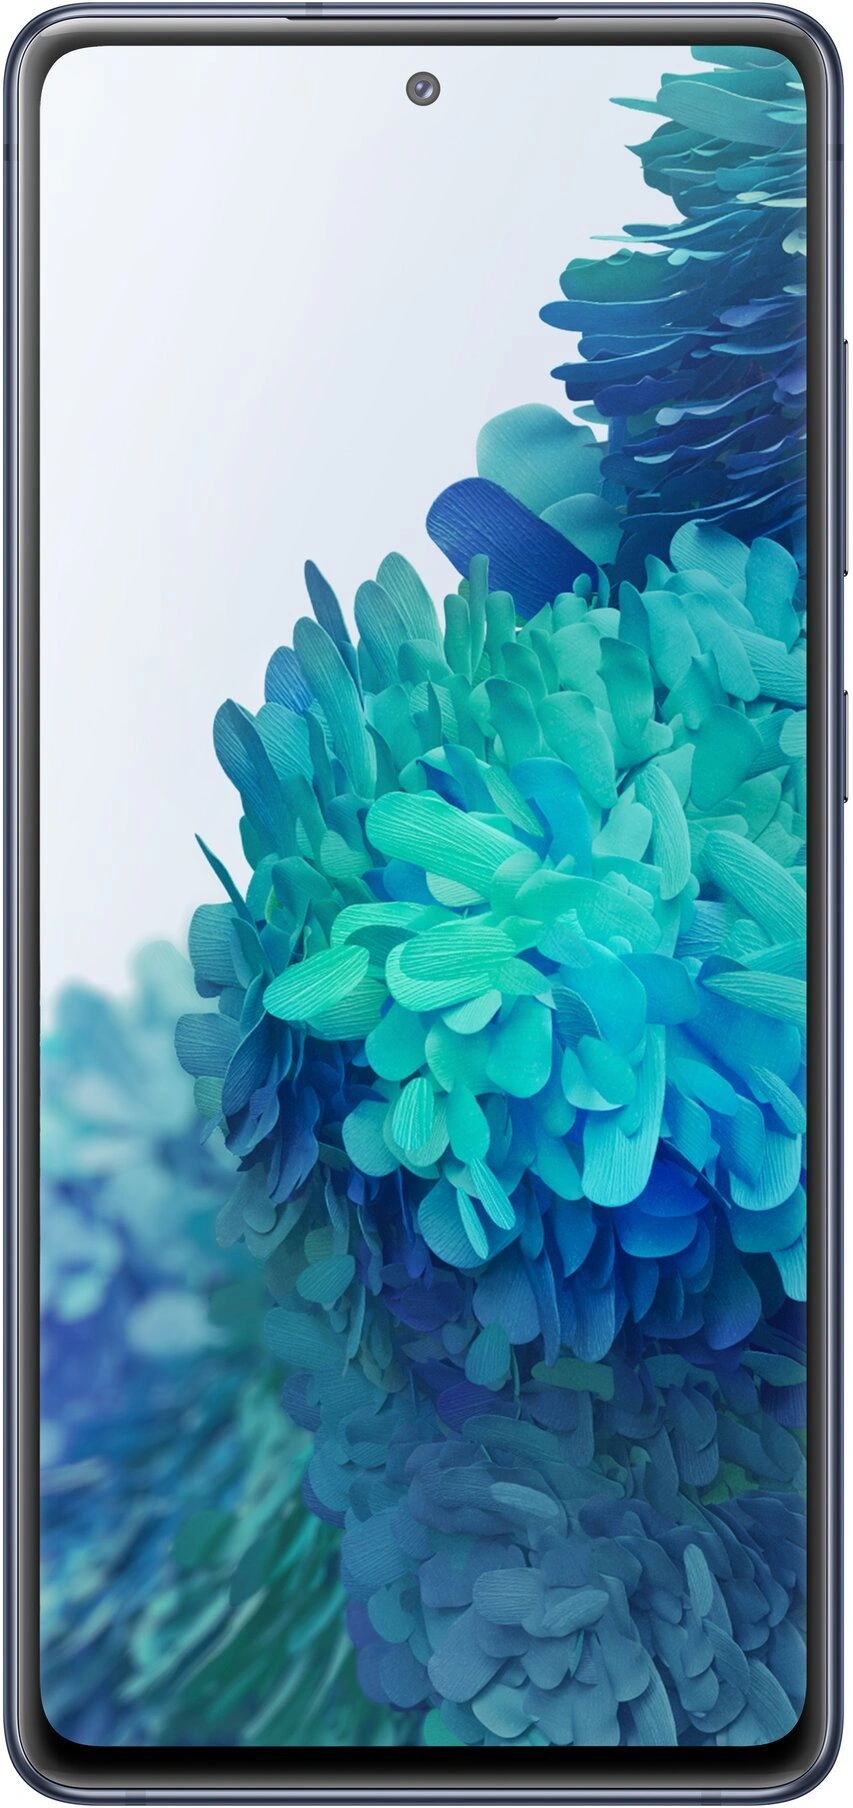 Samsung Galaxy S20 FE 6/128 GB 5G, Navy Blue